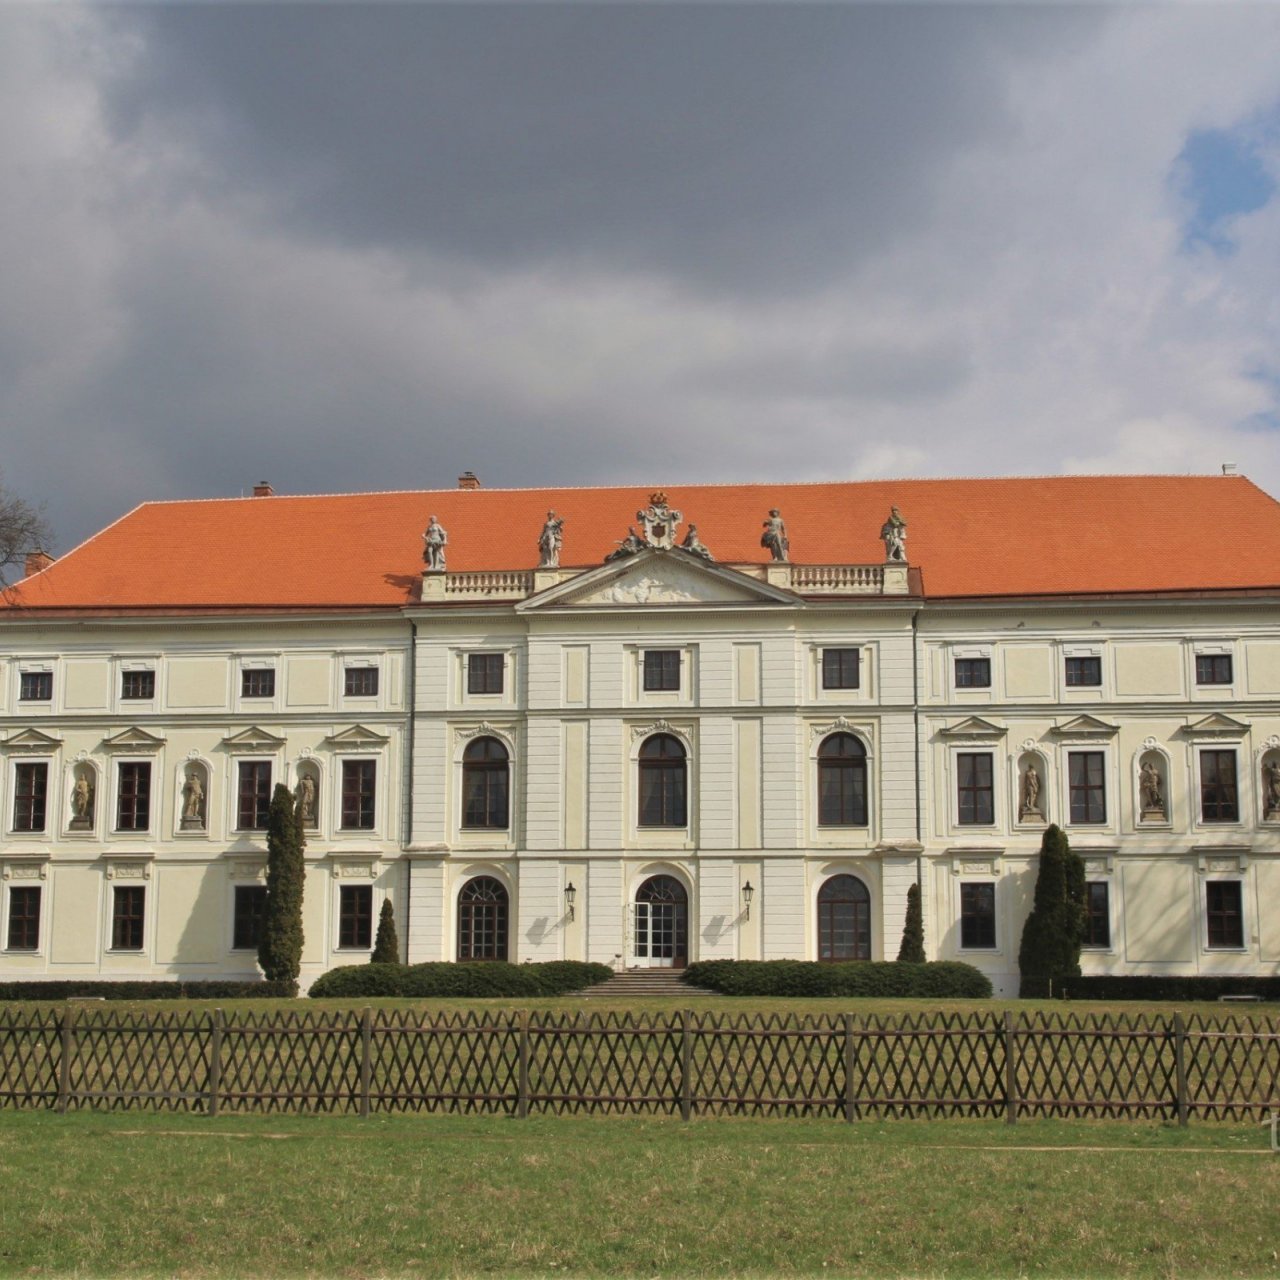 Židlochovice - zámek